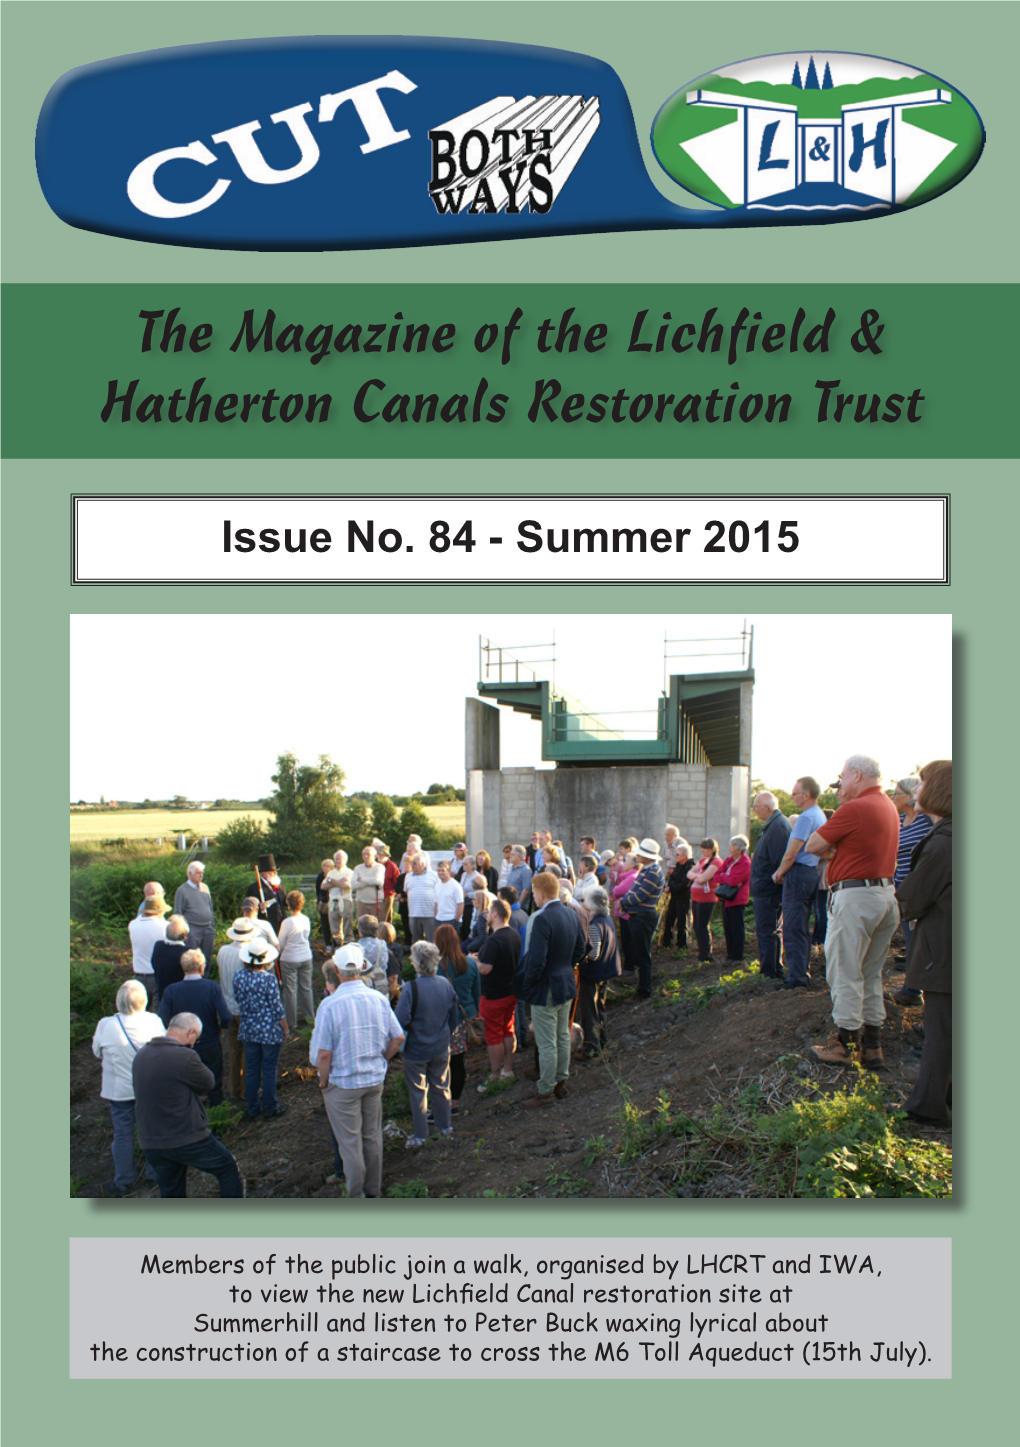 The Magazine of the Lichfield & Hatherton Canals Restoration Trust